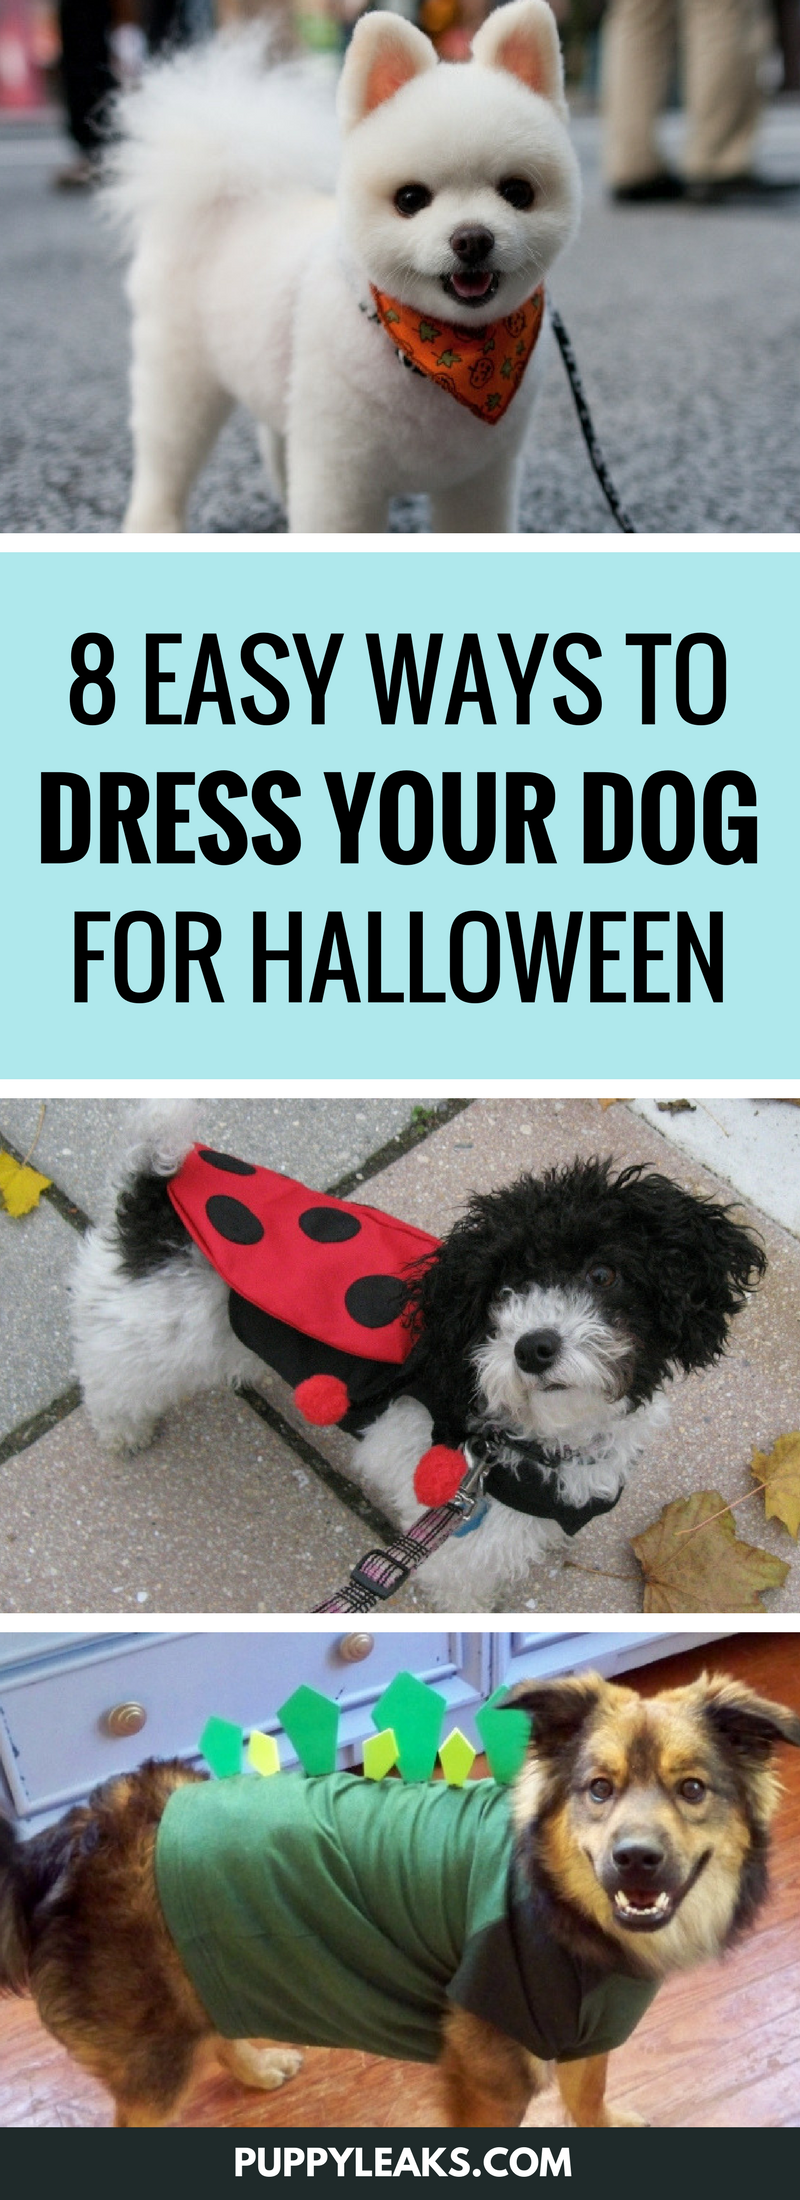 8 façons simples d habiller votre chien pour Halloween